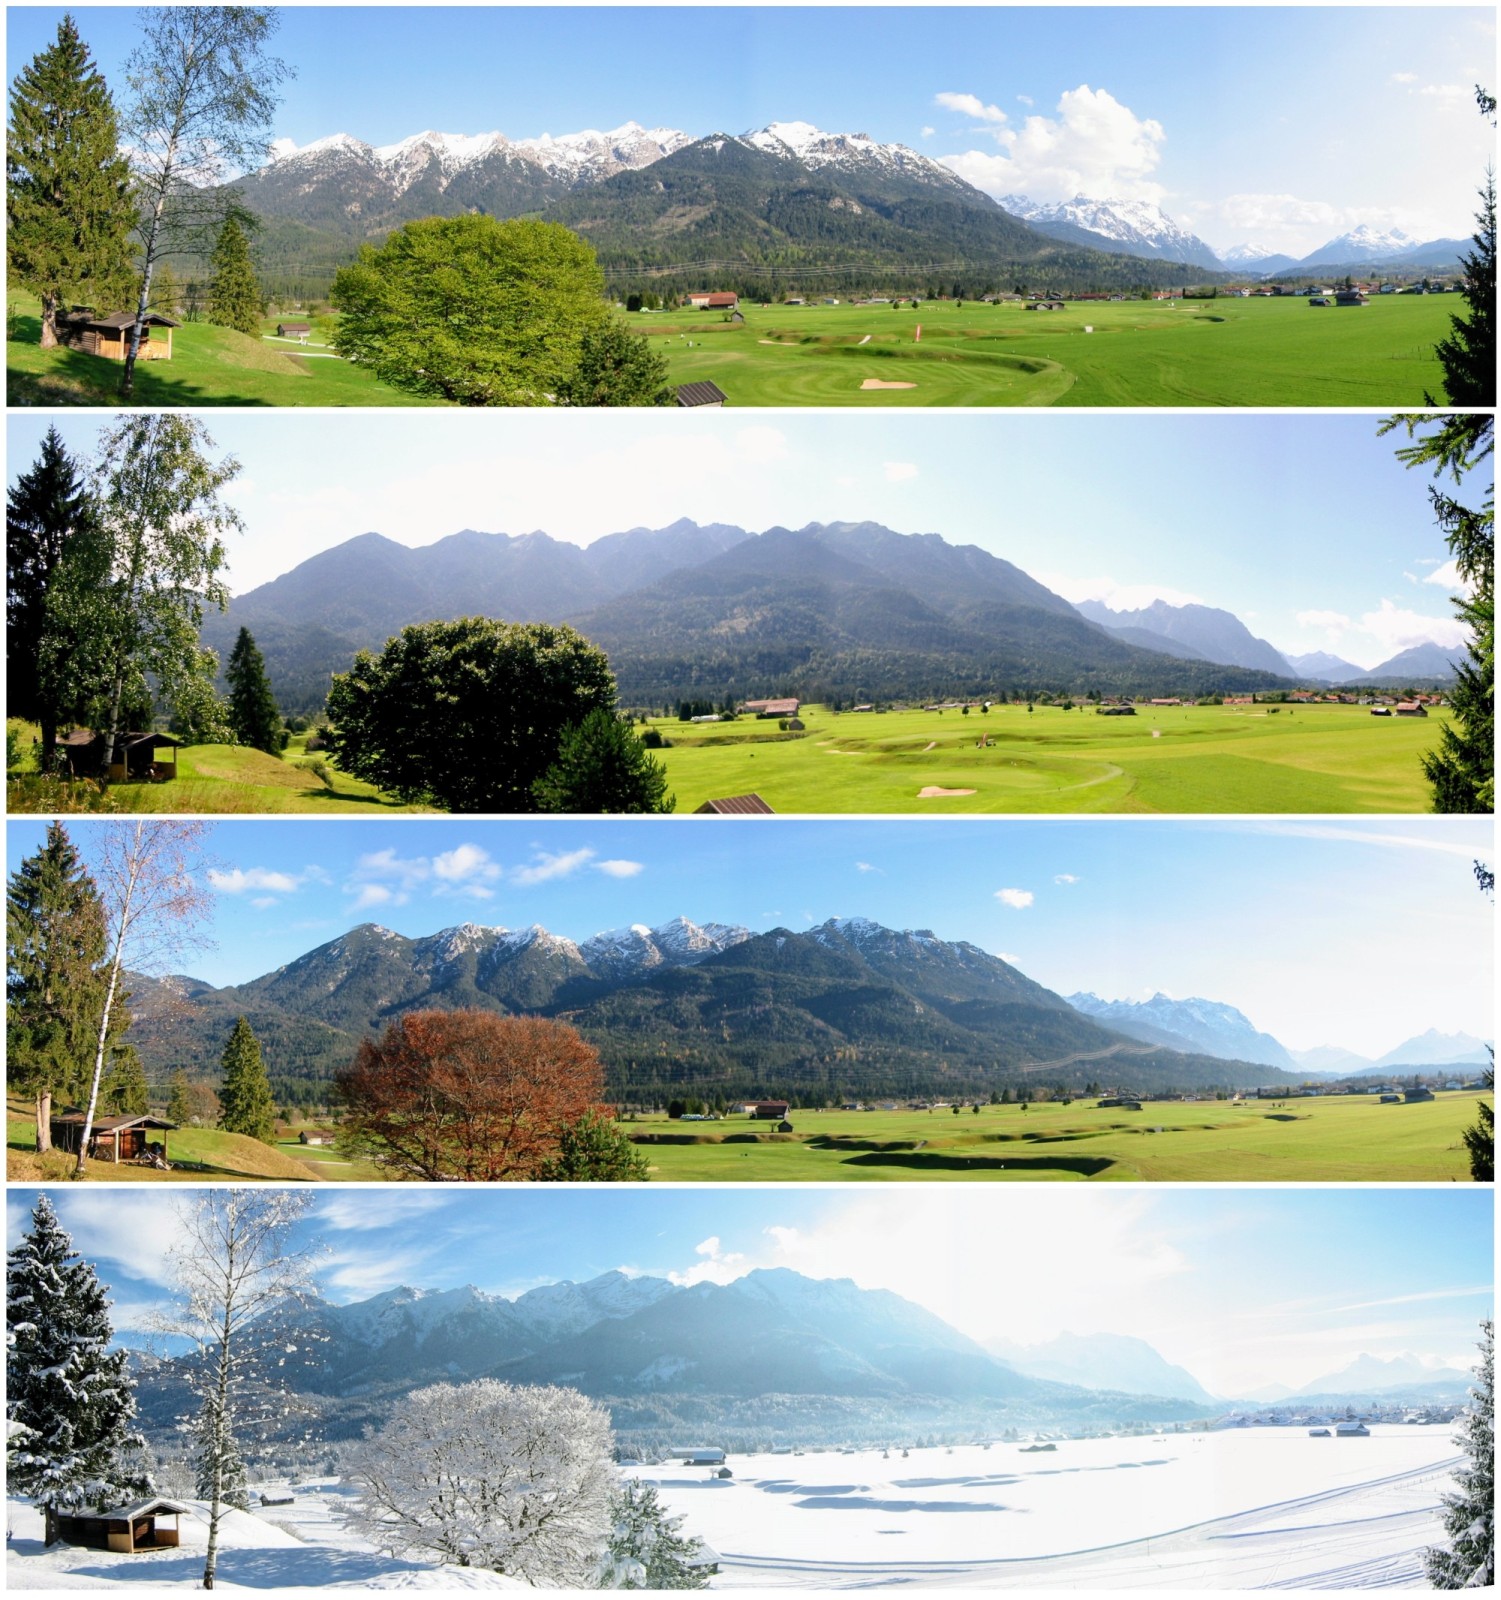 Vier Jahreszeiten. Blick auf den Golfplatz und das Karwendelgebirge bei Wallgau